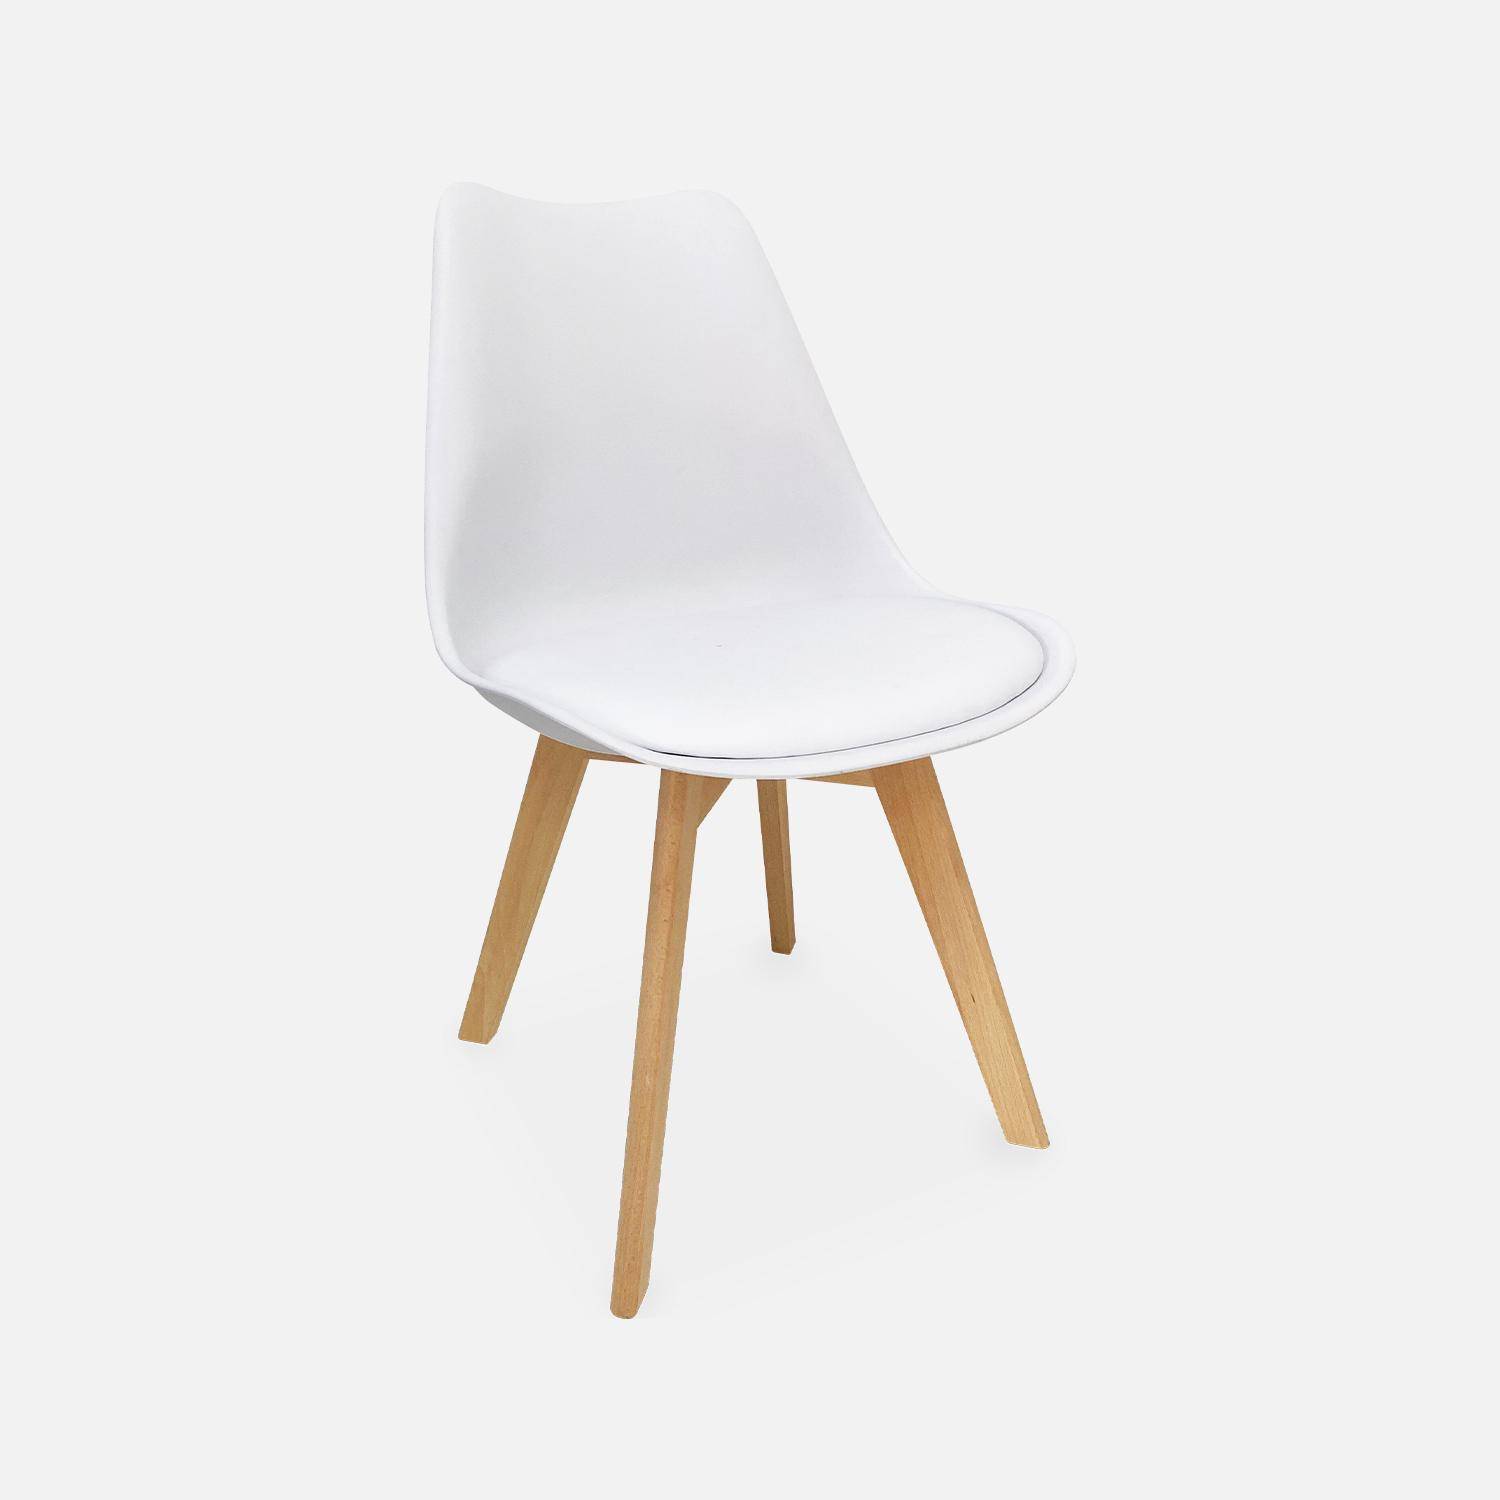 Juego de 6 sillas escandinavas, patas de madera de haya, monoplaza, blanco,sweeek,Photo5